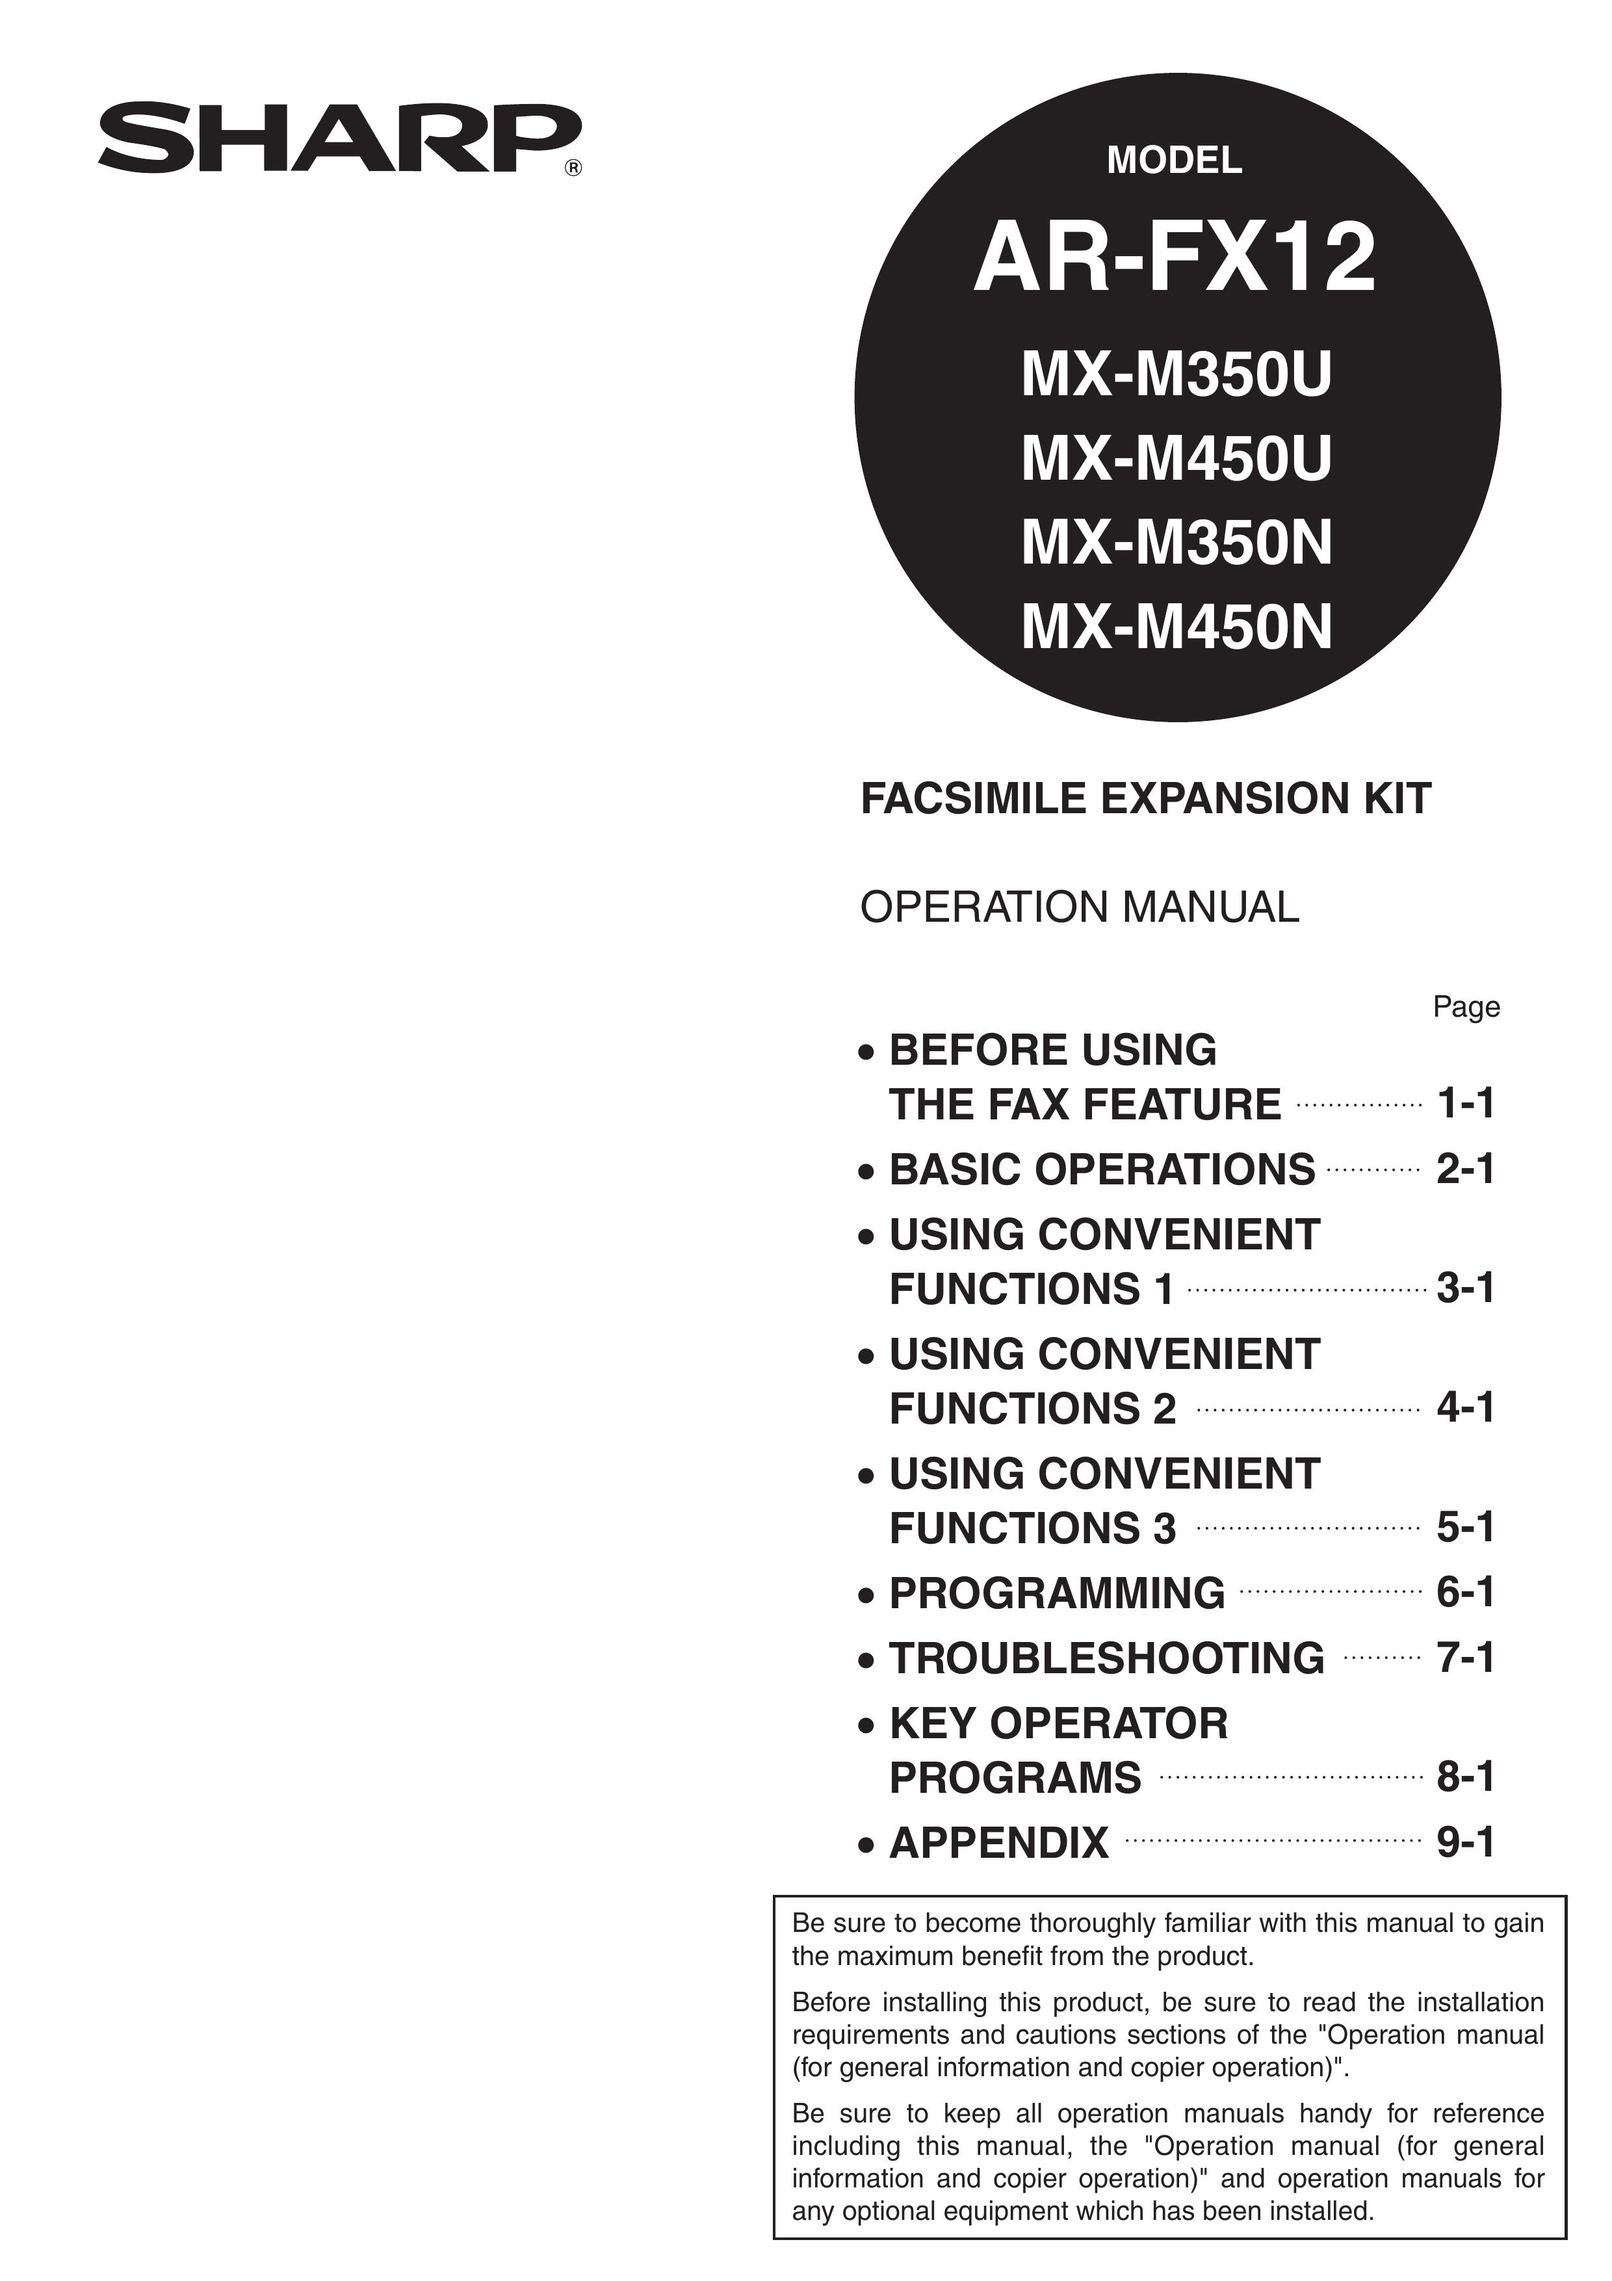 Sharp MX-M450U Fax Machine User Manual